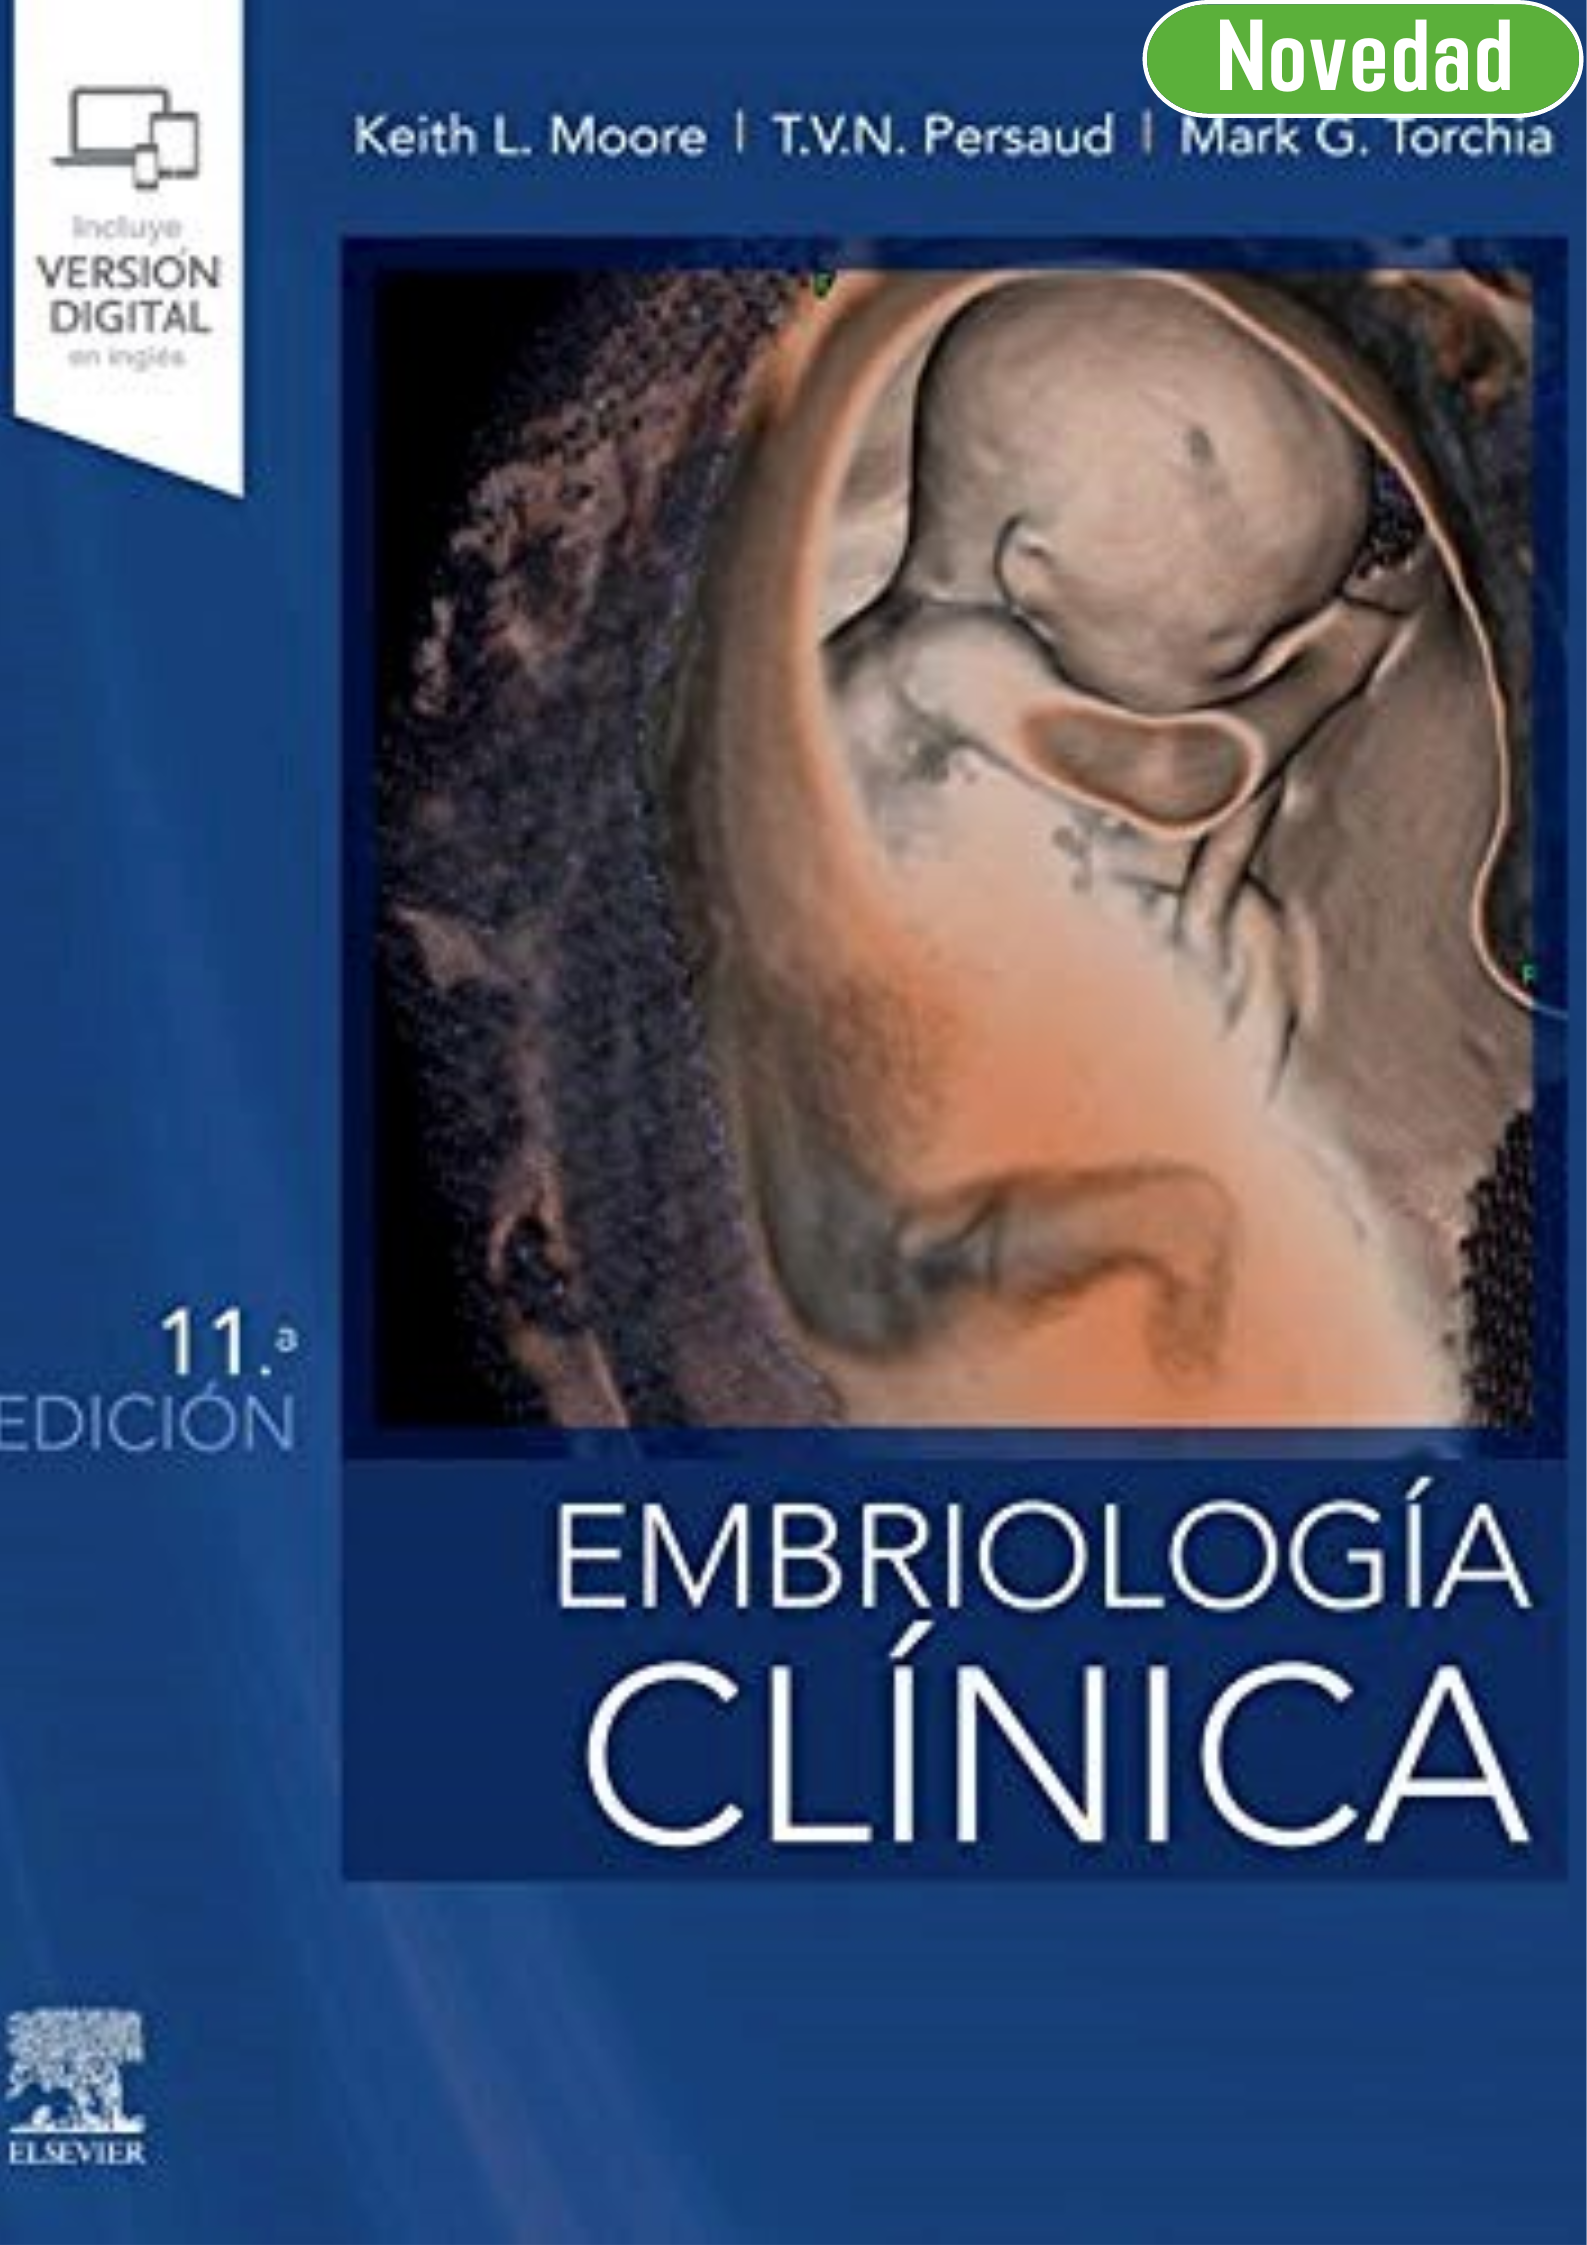 MOORE-Embriología Clínica 11 Ed.